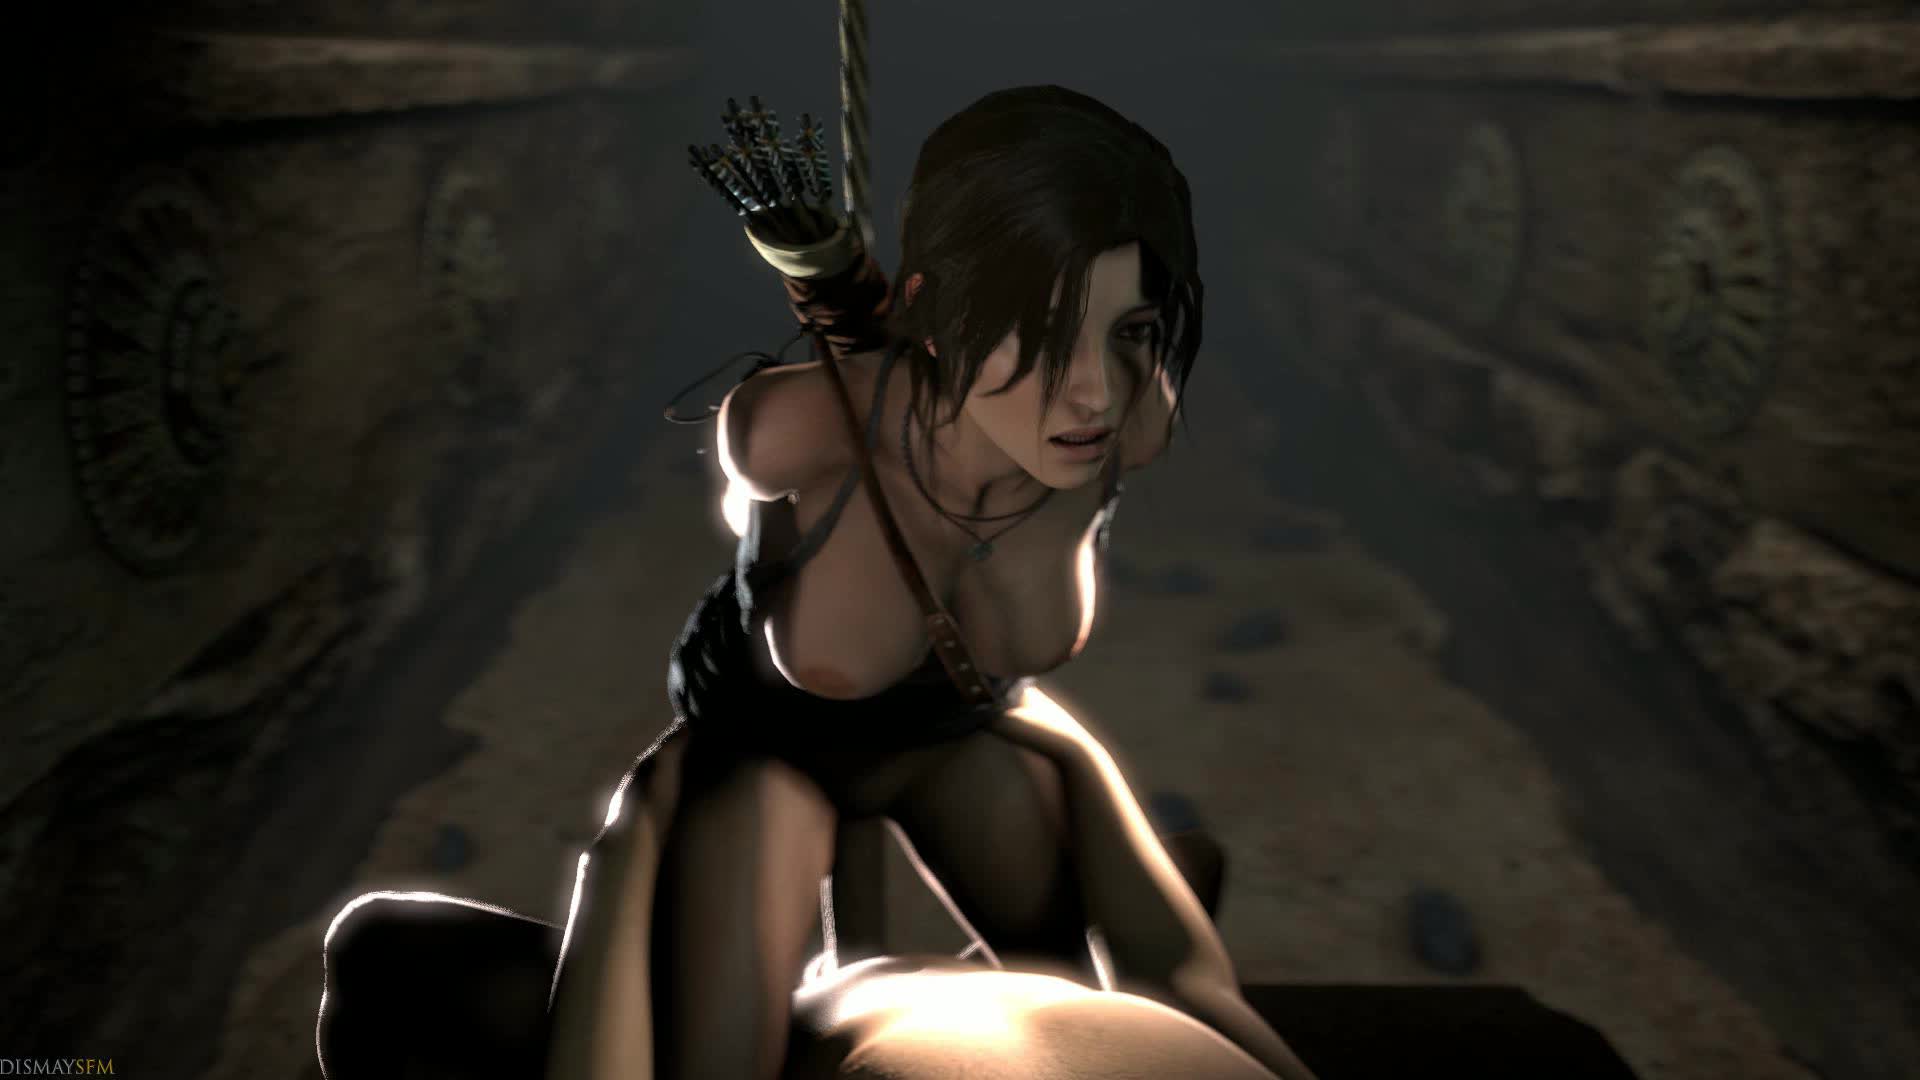 3D Animated Lara_Croft Source_Filmmaker Tomb_Raider dismaysfm // 1920x1080 // 9.7MB // webm